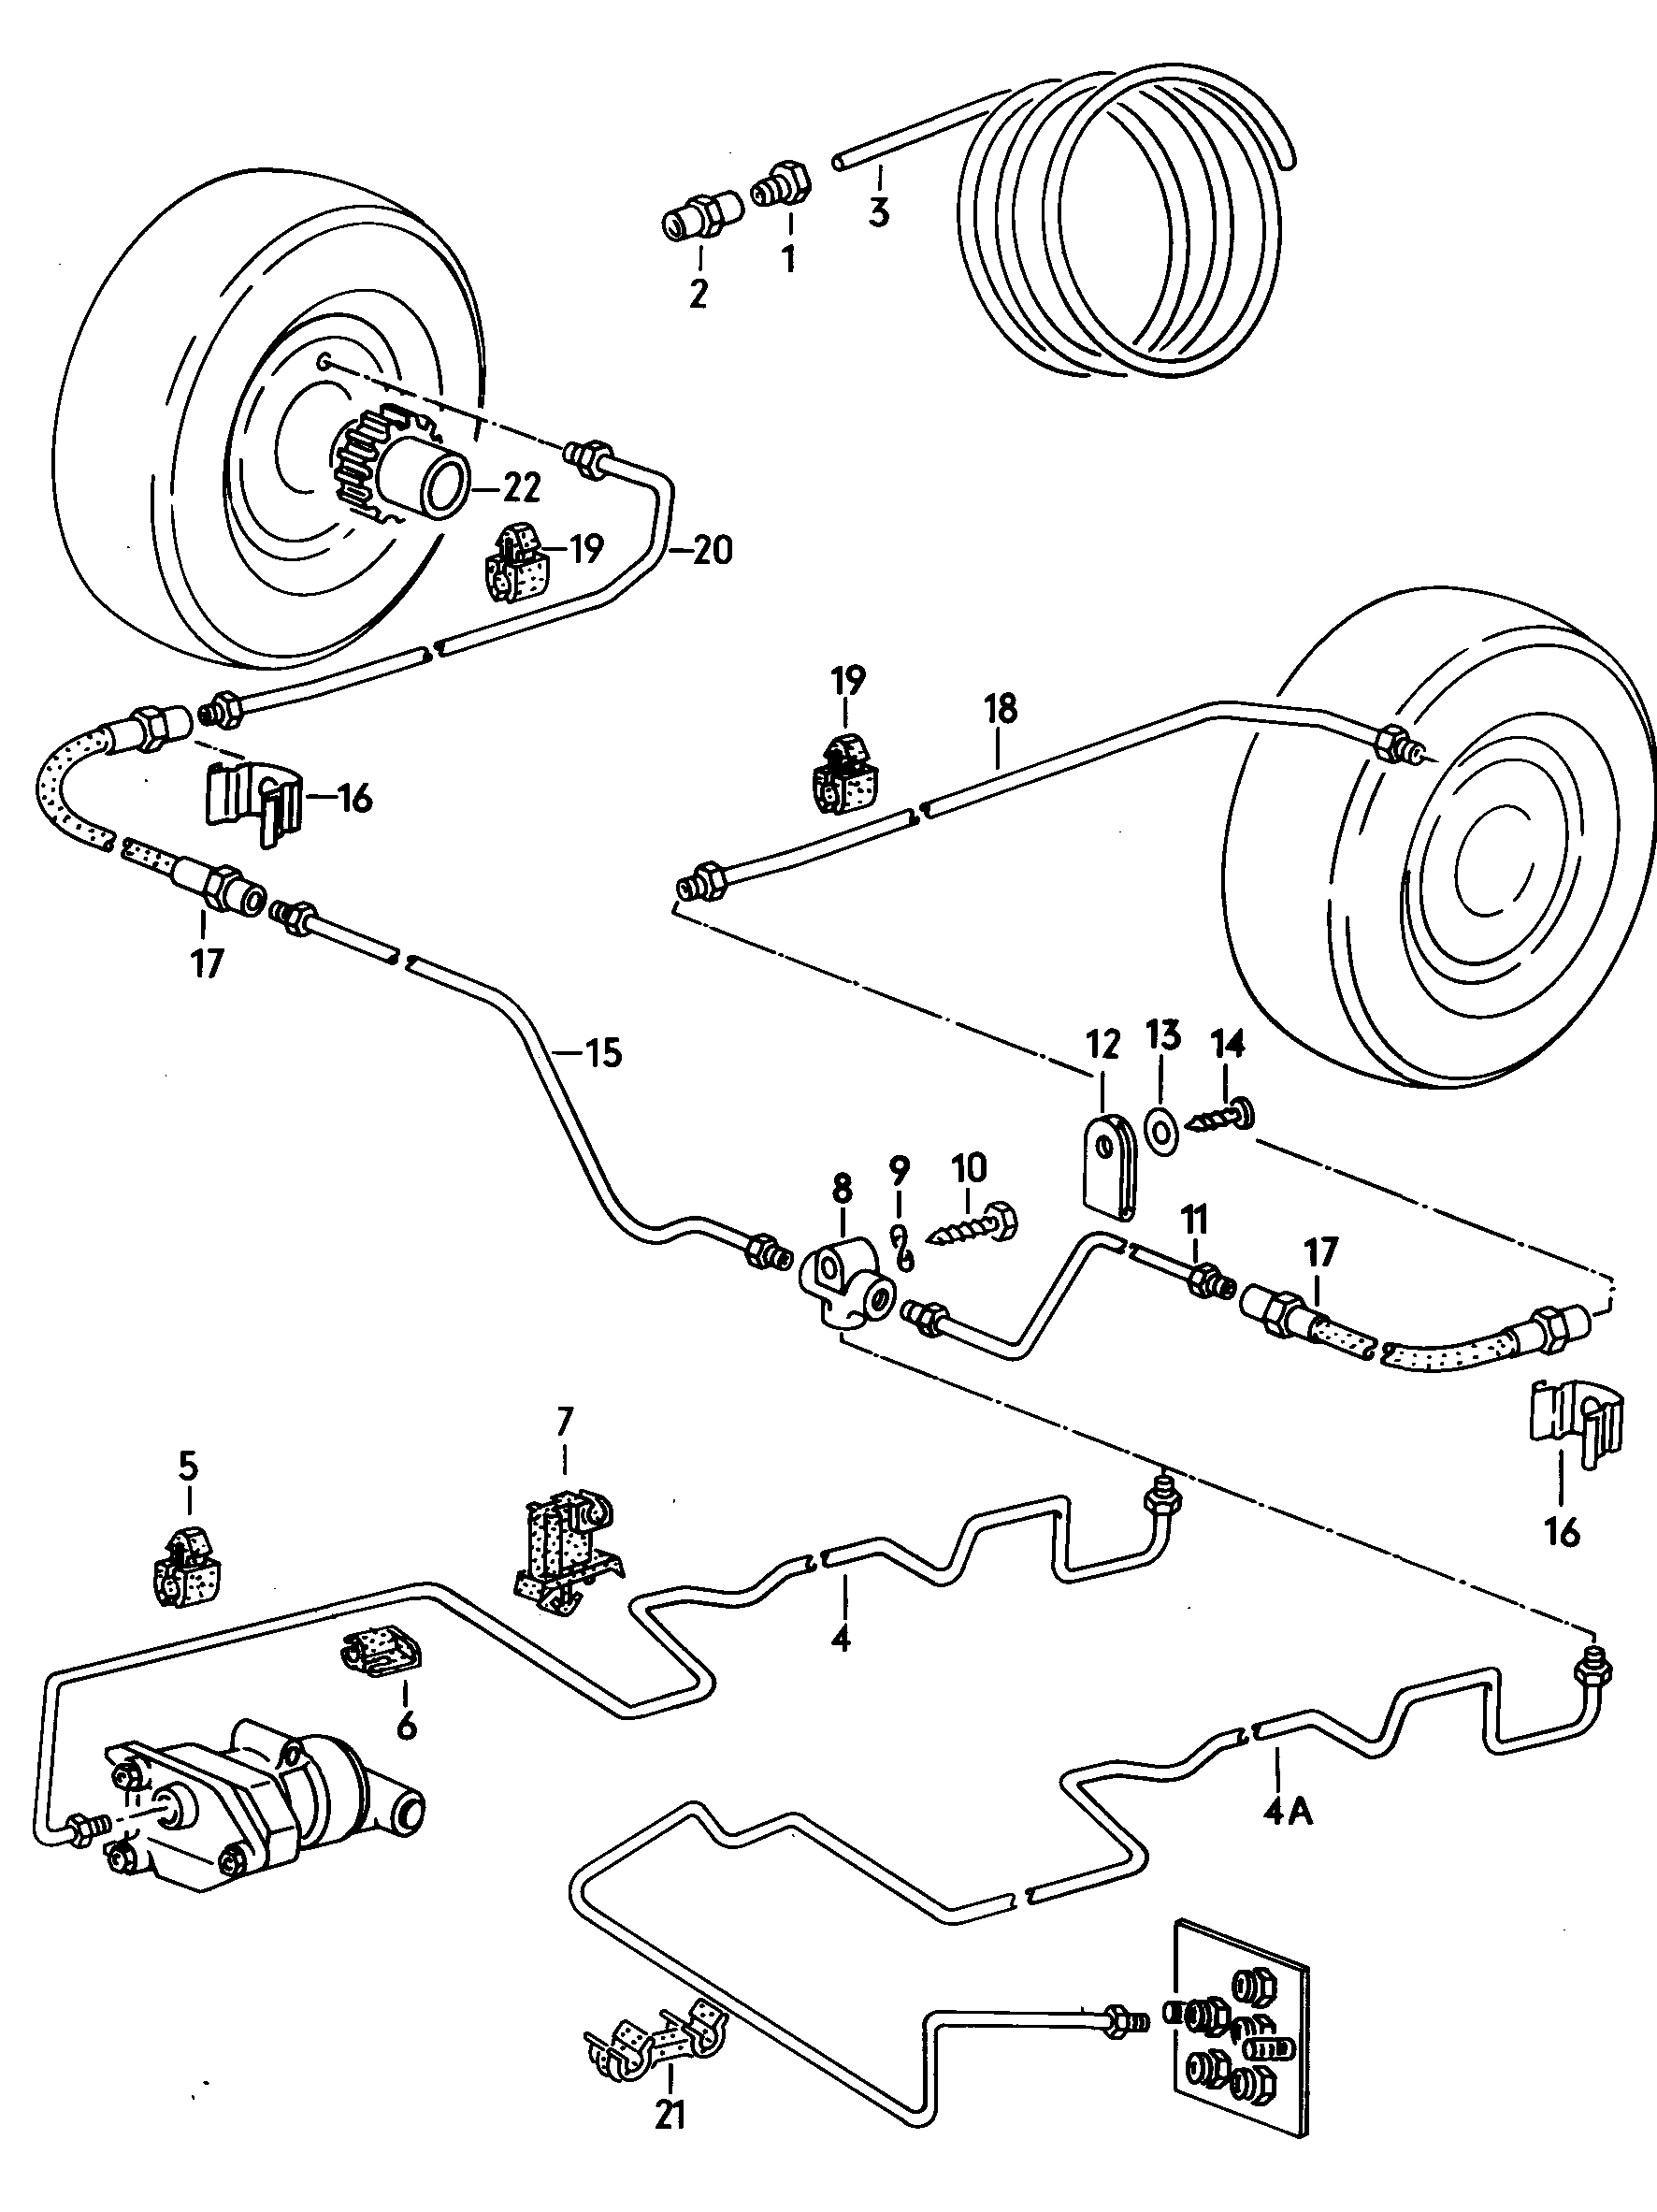 Bremsrohr; Bremsschlauch; Rotor fuer Drehzahlfuehl... - Typ 2/syncro(T2)  